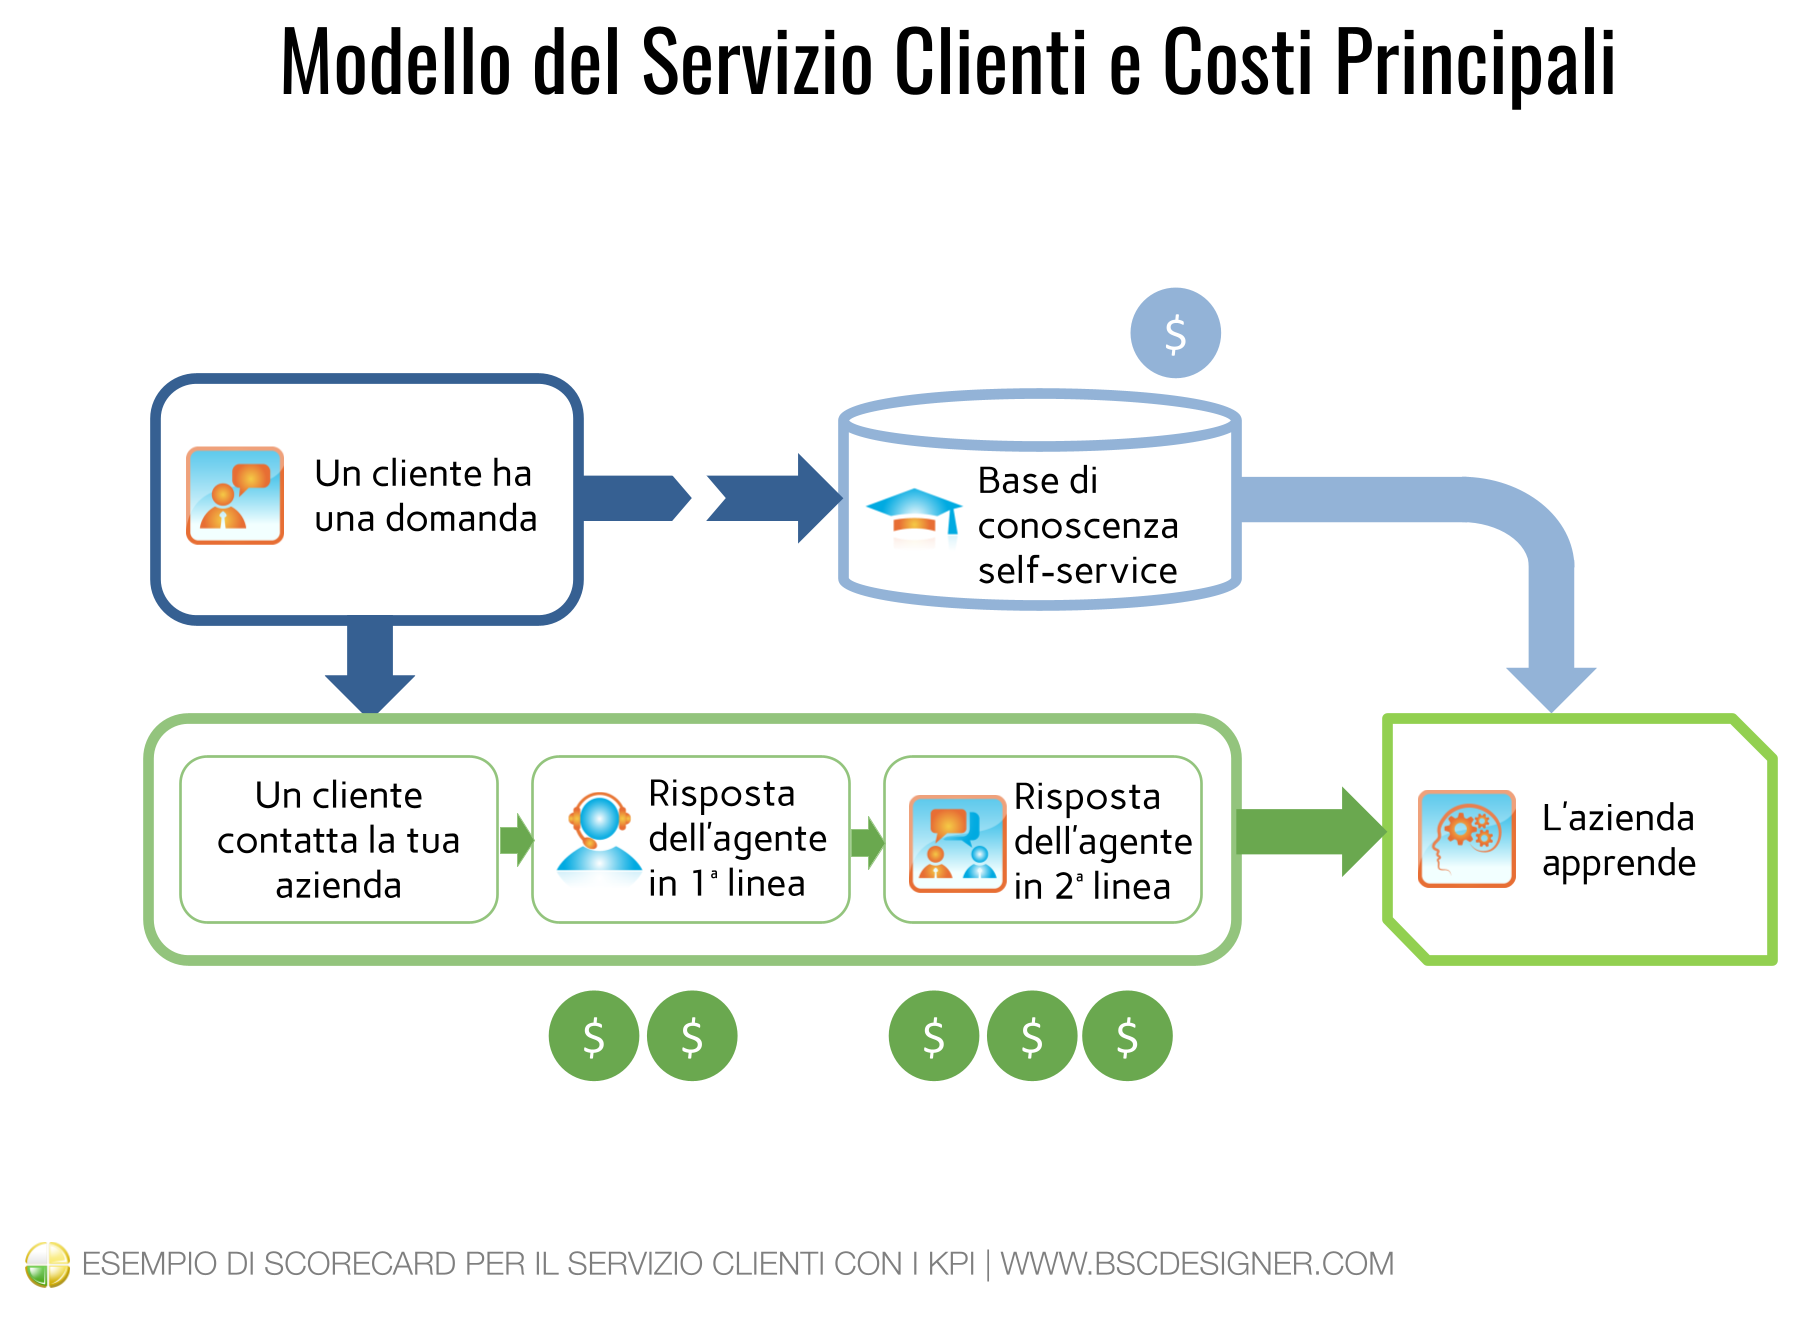 Esempio di un Modello per il Servizio Clienti e Costi Principali